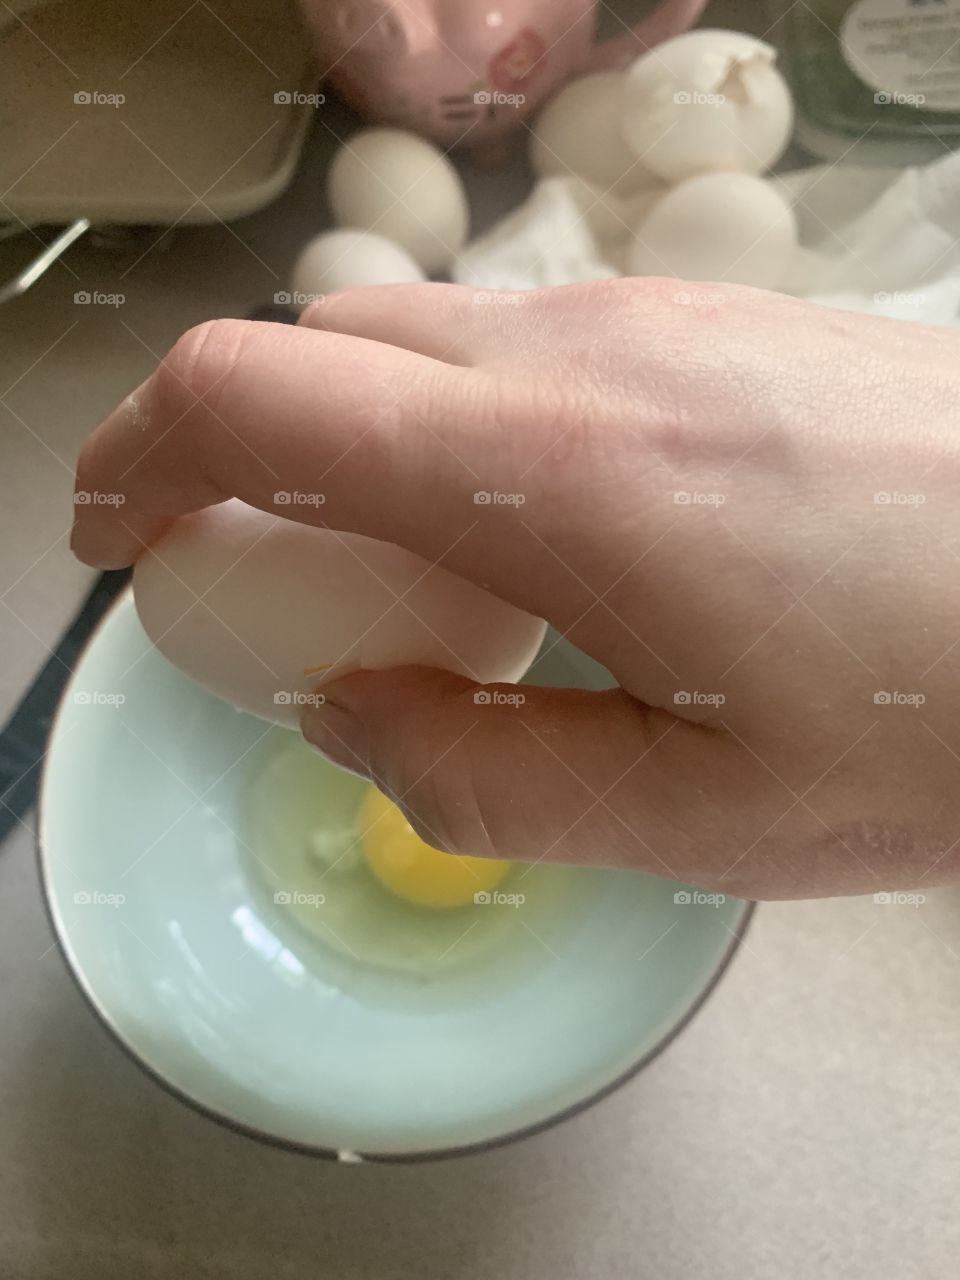 Egg cracking